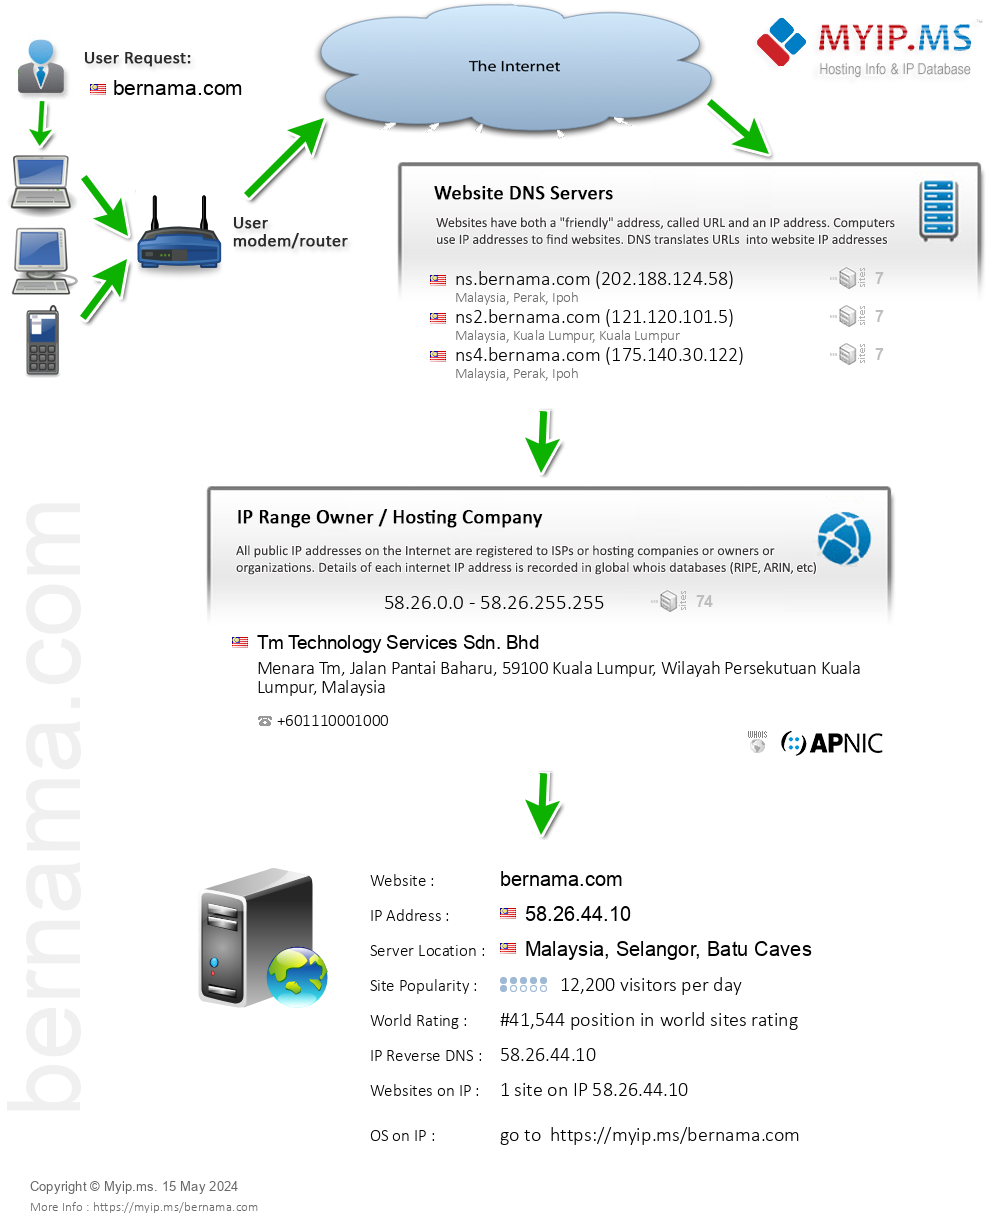 Bernama.com - Website Hosting Visual IP Diagram